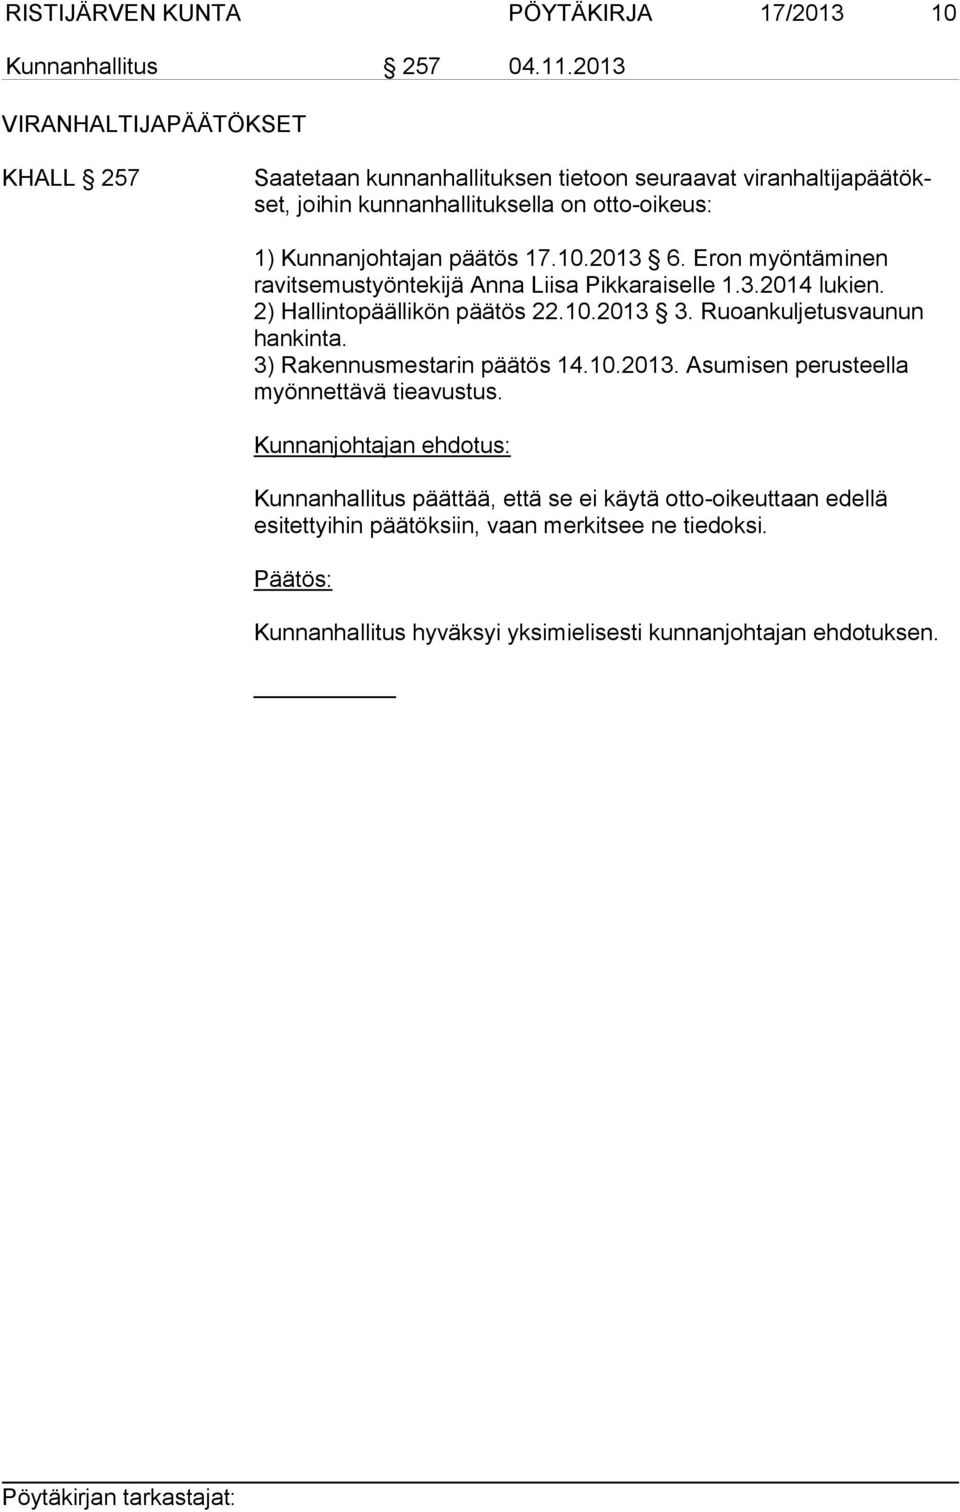 päätös 17.10.2013 6. Eron myöntäminen ravitsemustyöntekijä Anna Liisa Pikkaraiselle 1.3.2014 lukien. 2) Hallintopäällikön päätös 22.10.2013 3.